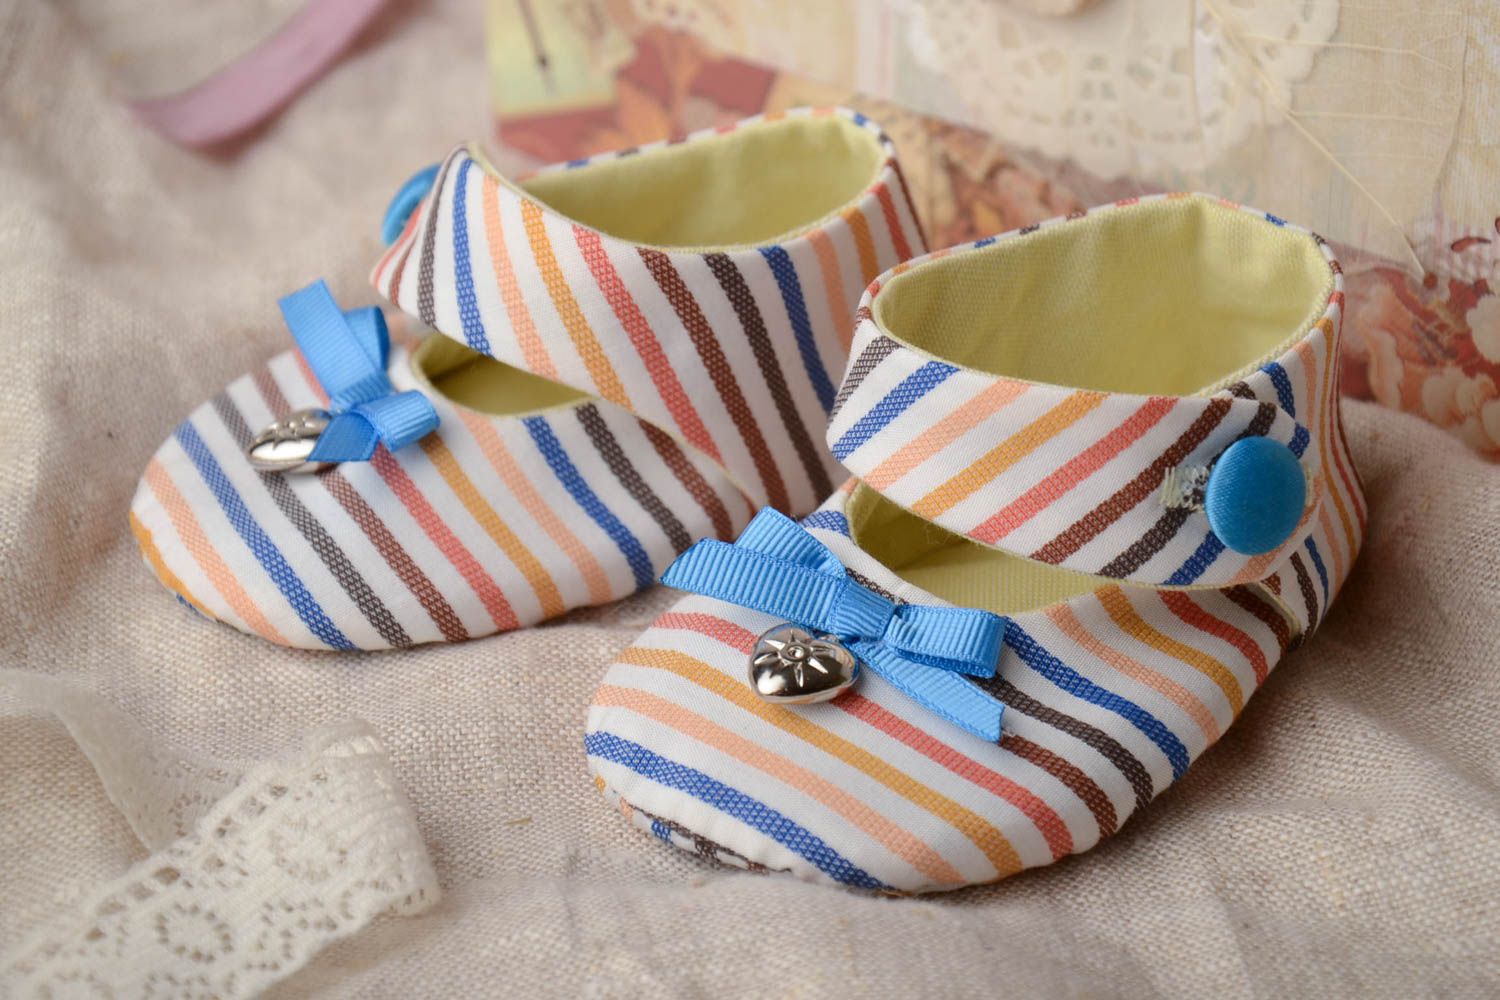 Туфельки для девочки полосатые с бантиками цветные из хлопка ручной работы фото 1